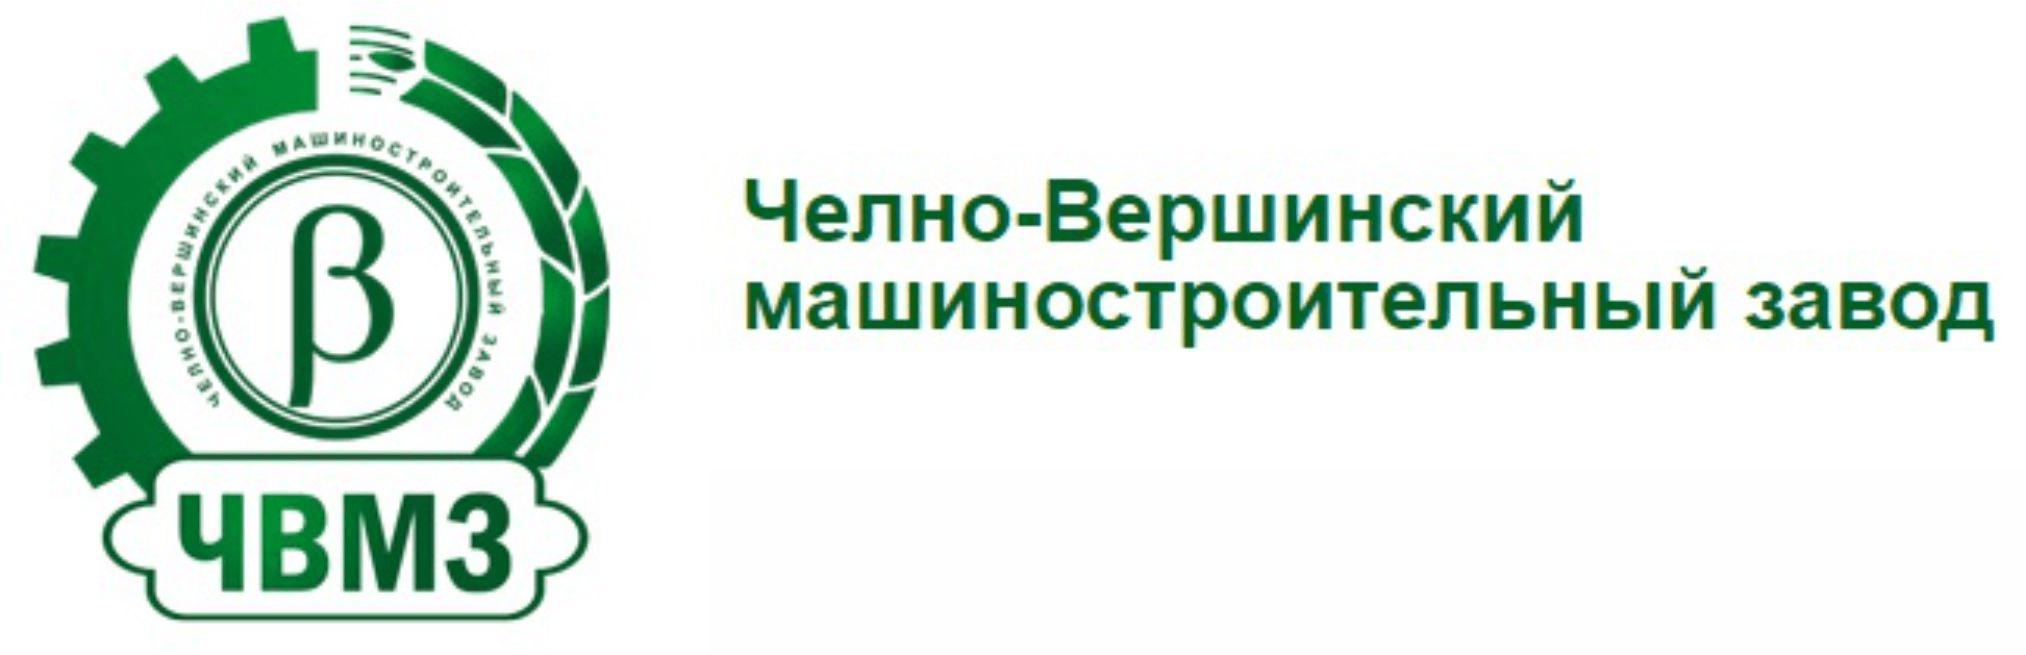 Челно-Вершинский машиностроительный завод logo